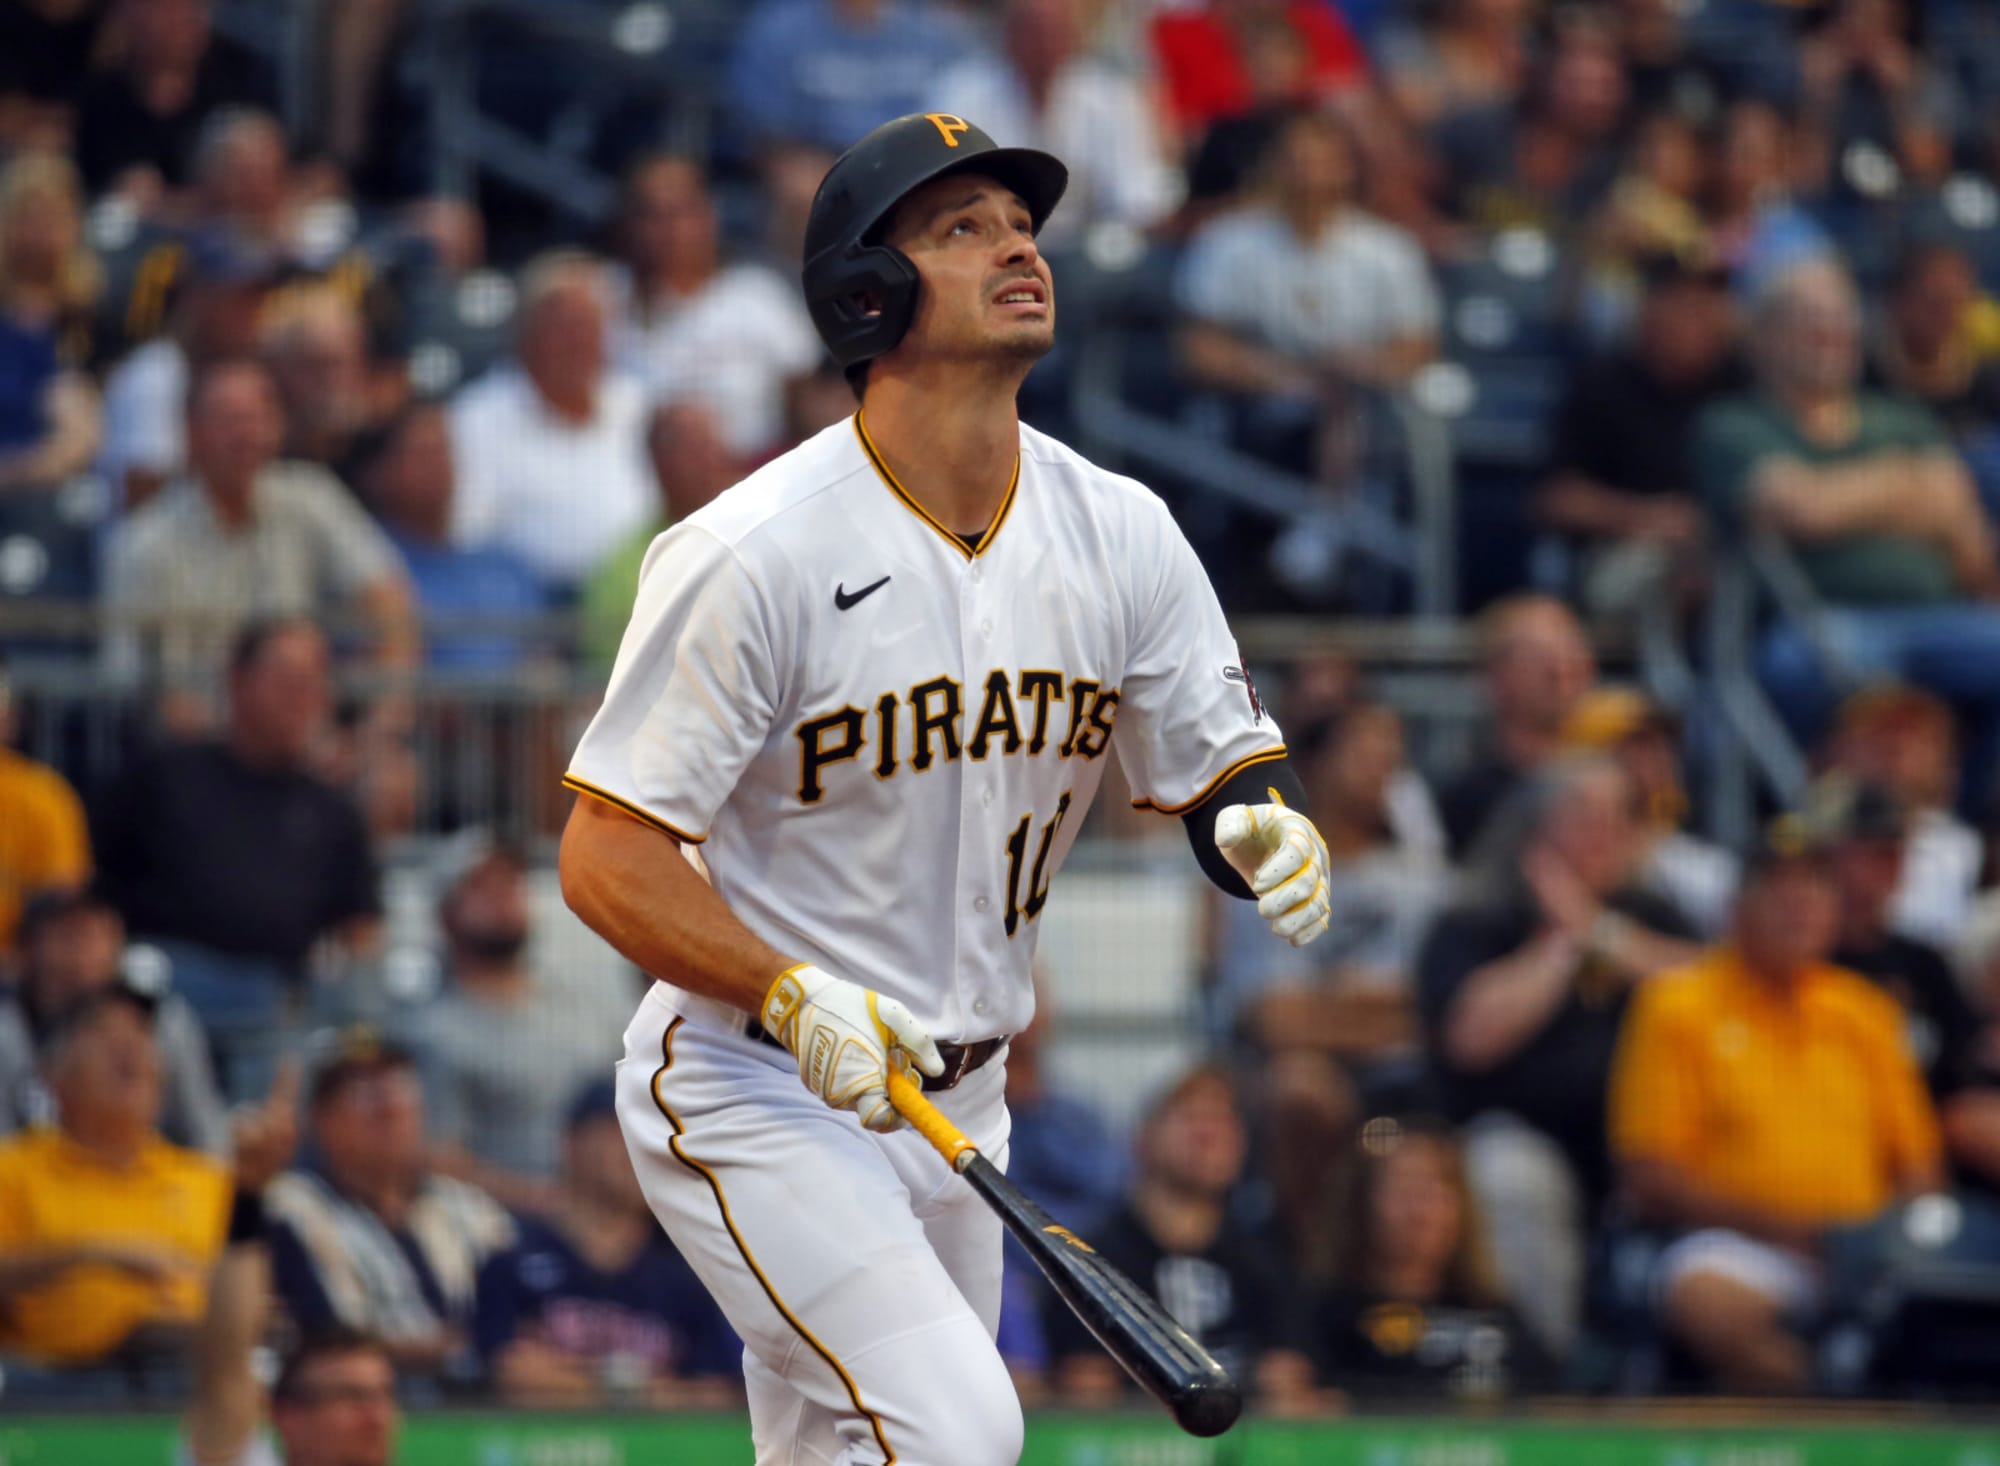 Yankees eye Pirates' Bryan Reynolds amid 'unrealistic asks